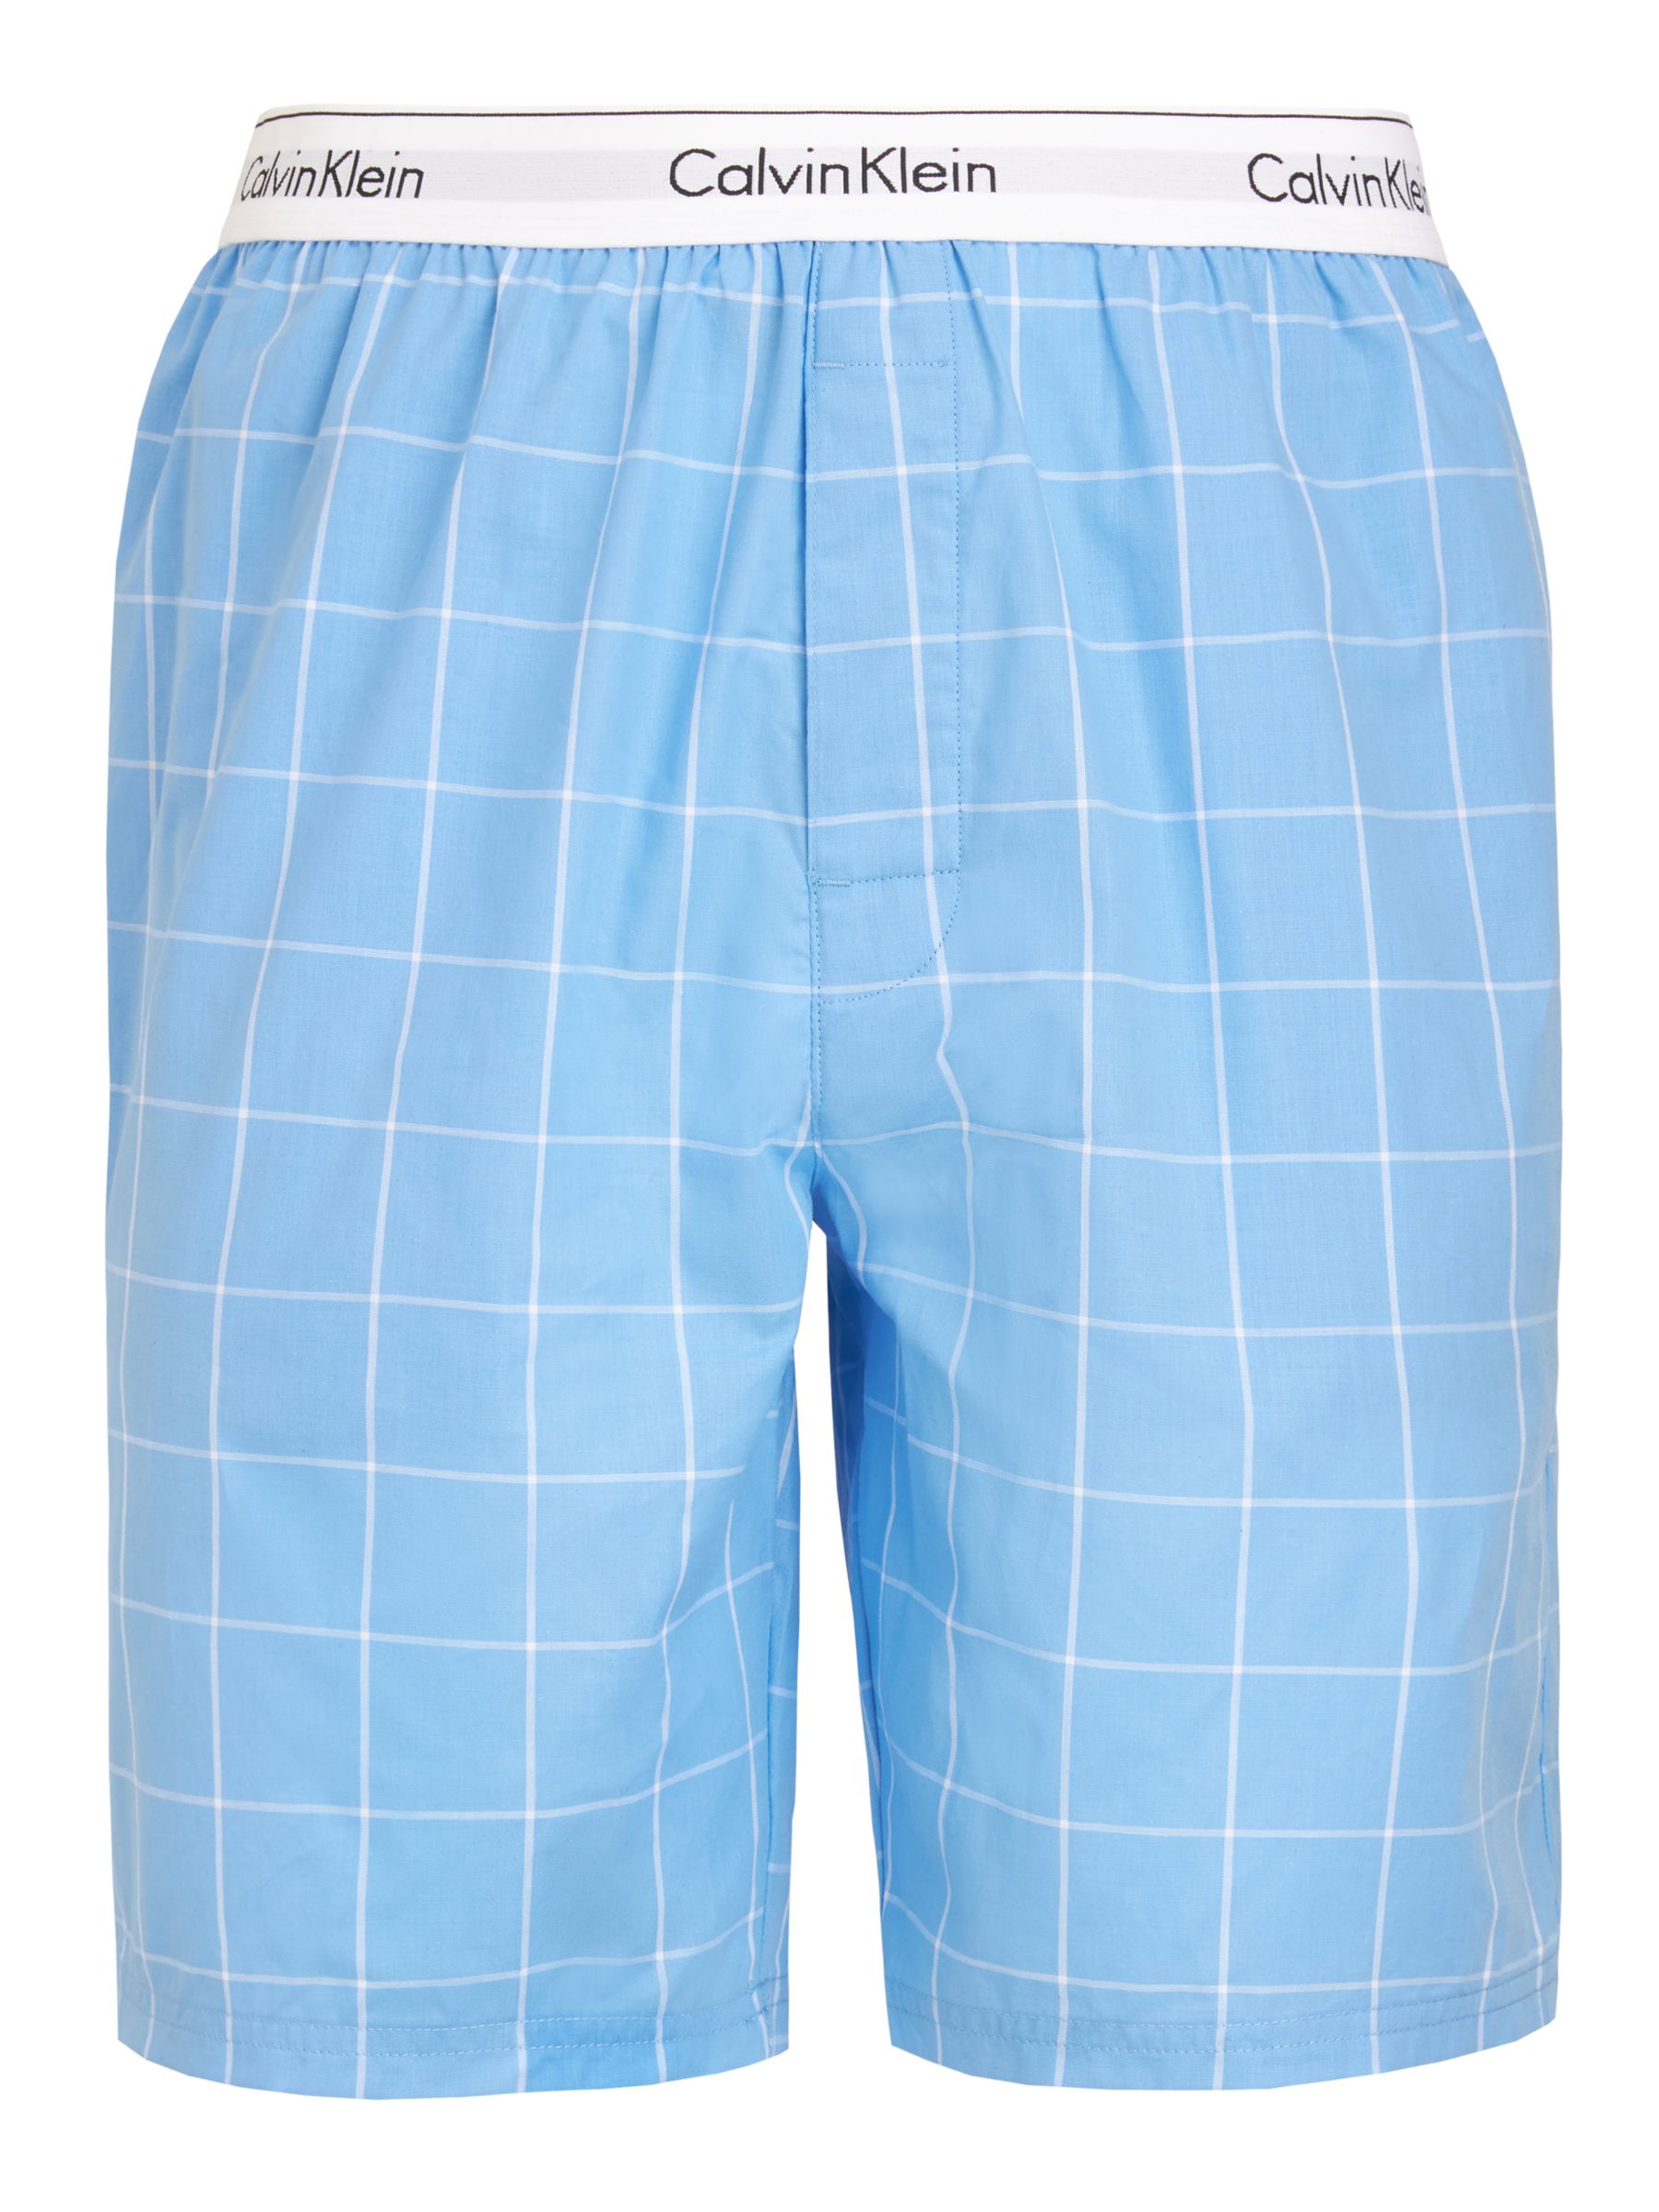 Calvin Klein Windowpane Check Sleep Shorts, Blue